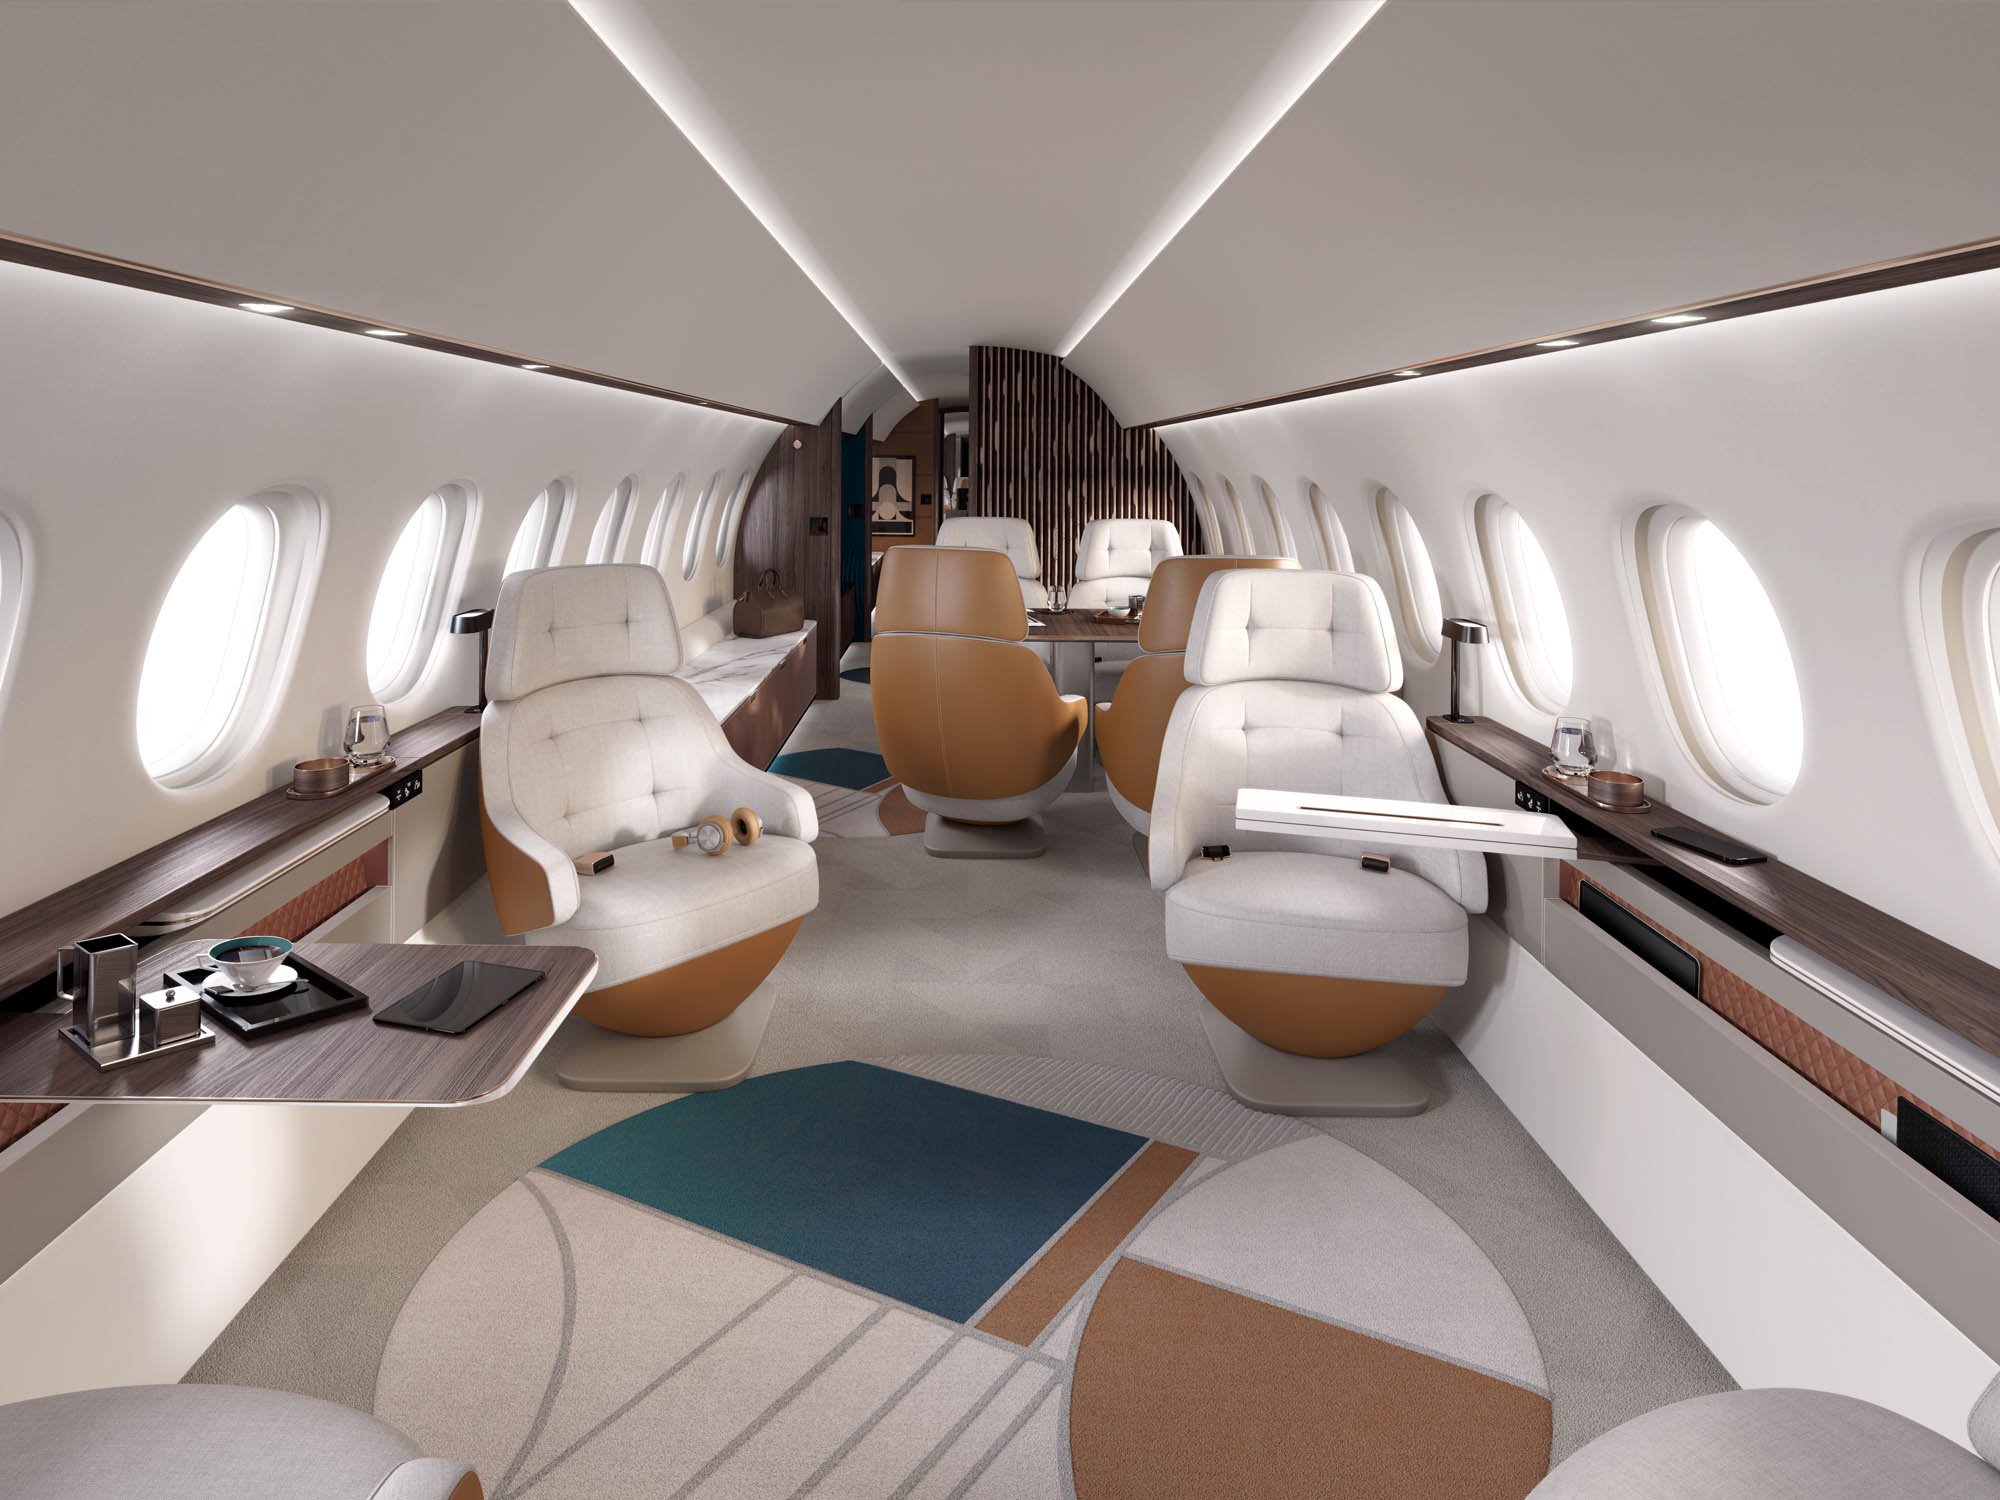 Dassault Falcon 10x interior